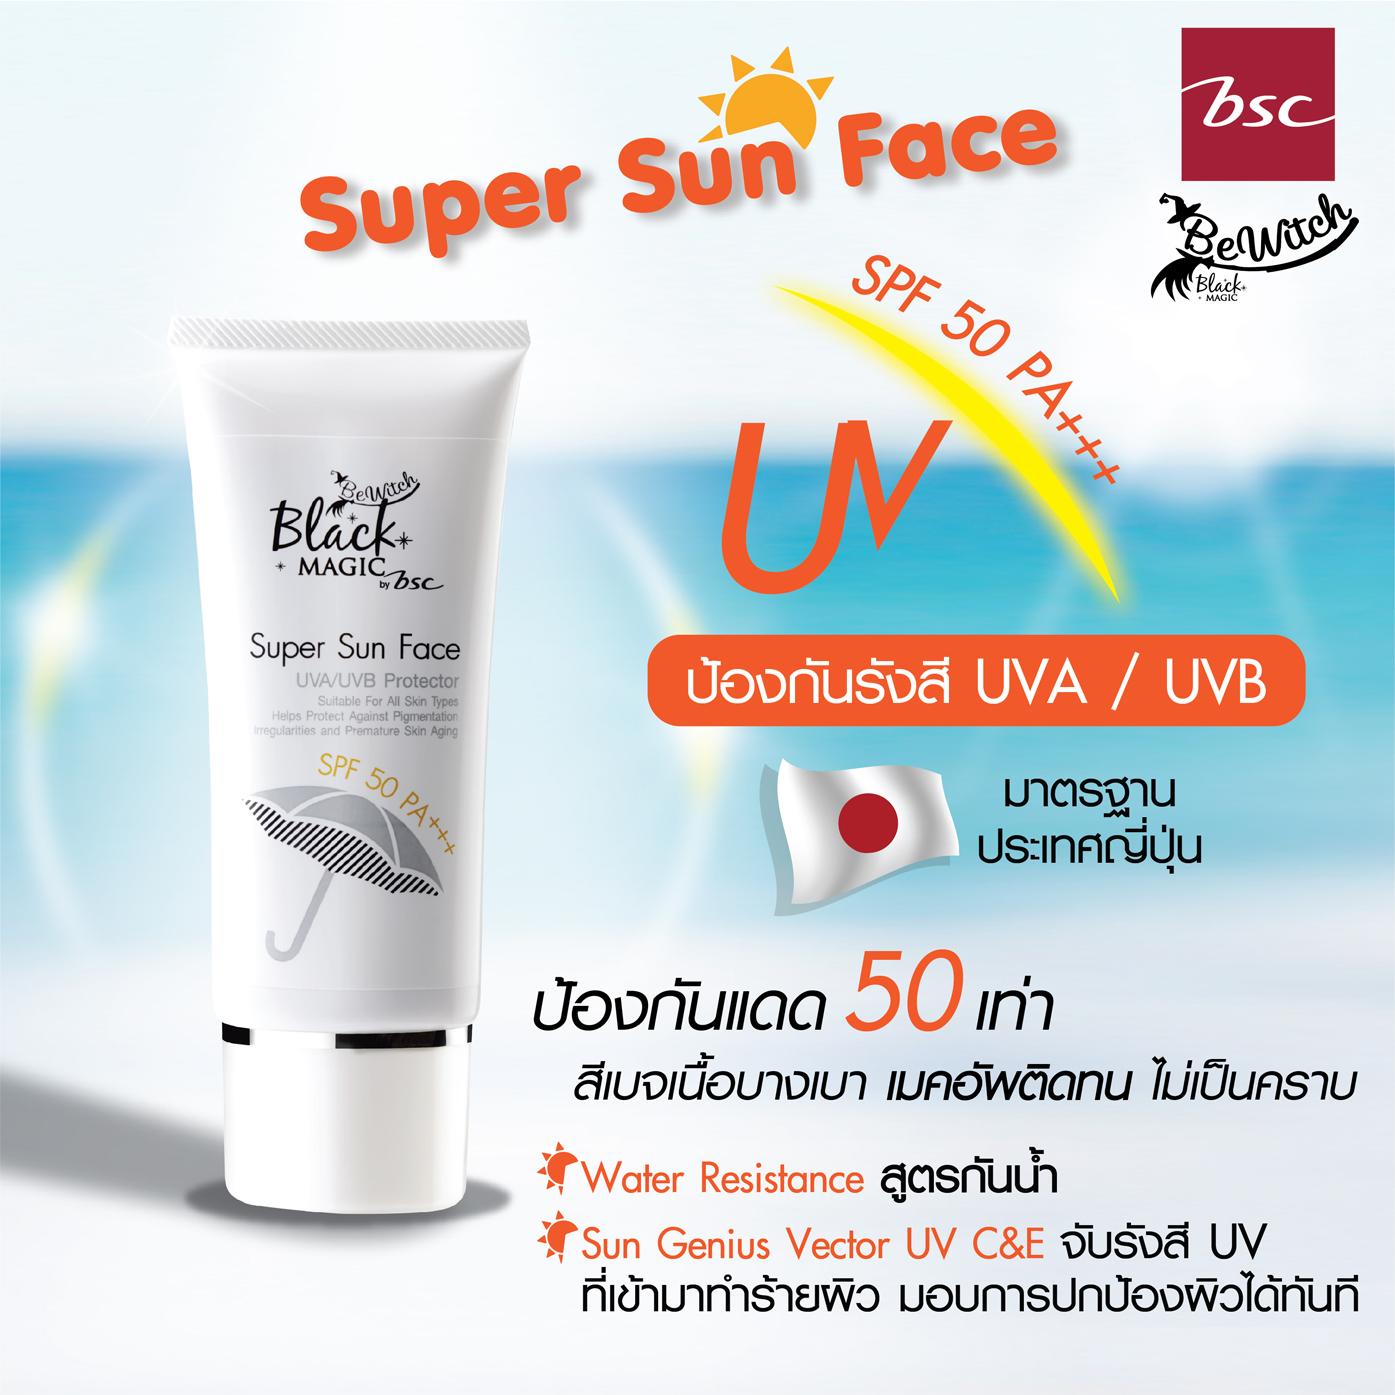 AD Thailand Best 800x800 pixel Super Sun Face Ingredient-01re.jpg